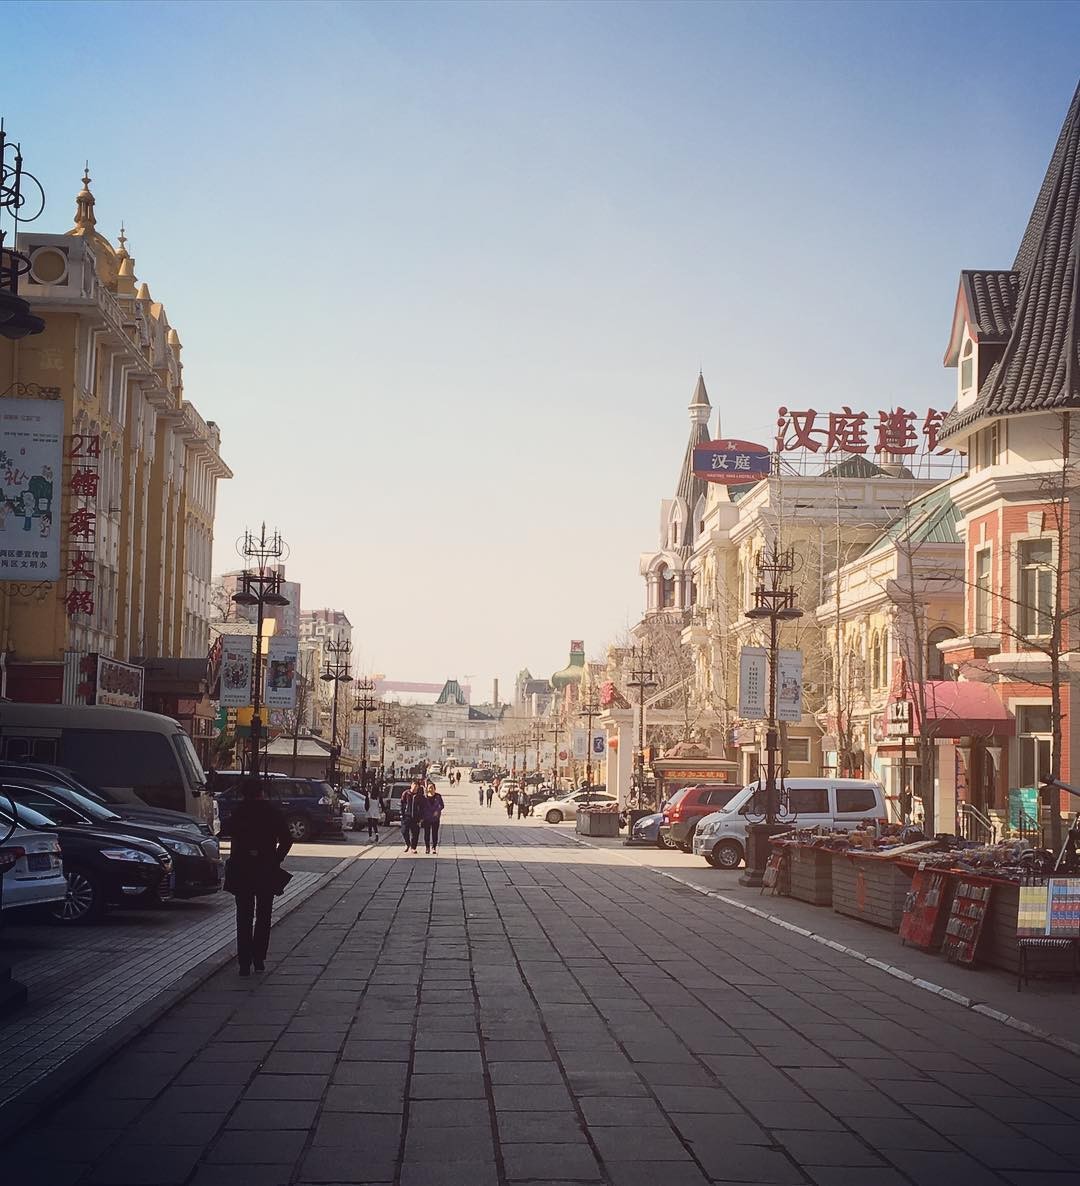 【中国・大連】かつて多くのロシア人が住んでいたロシア風情街を散策しよう